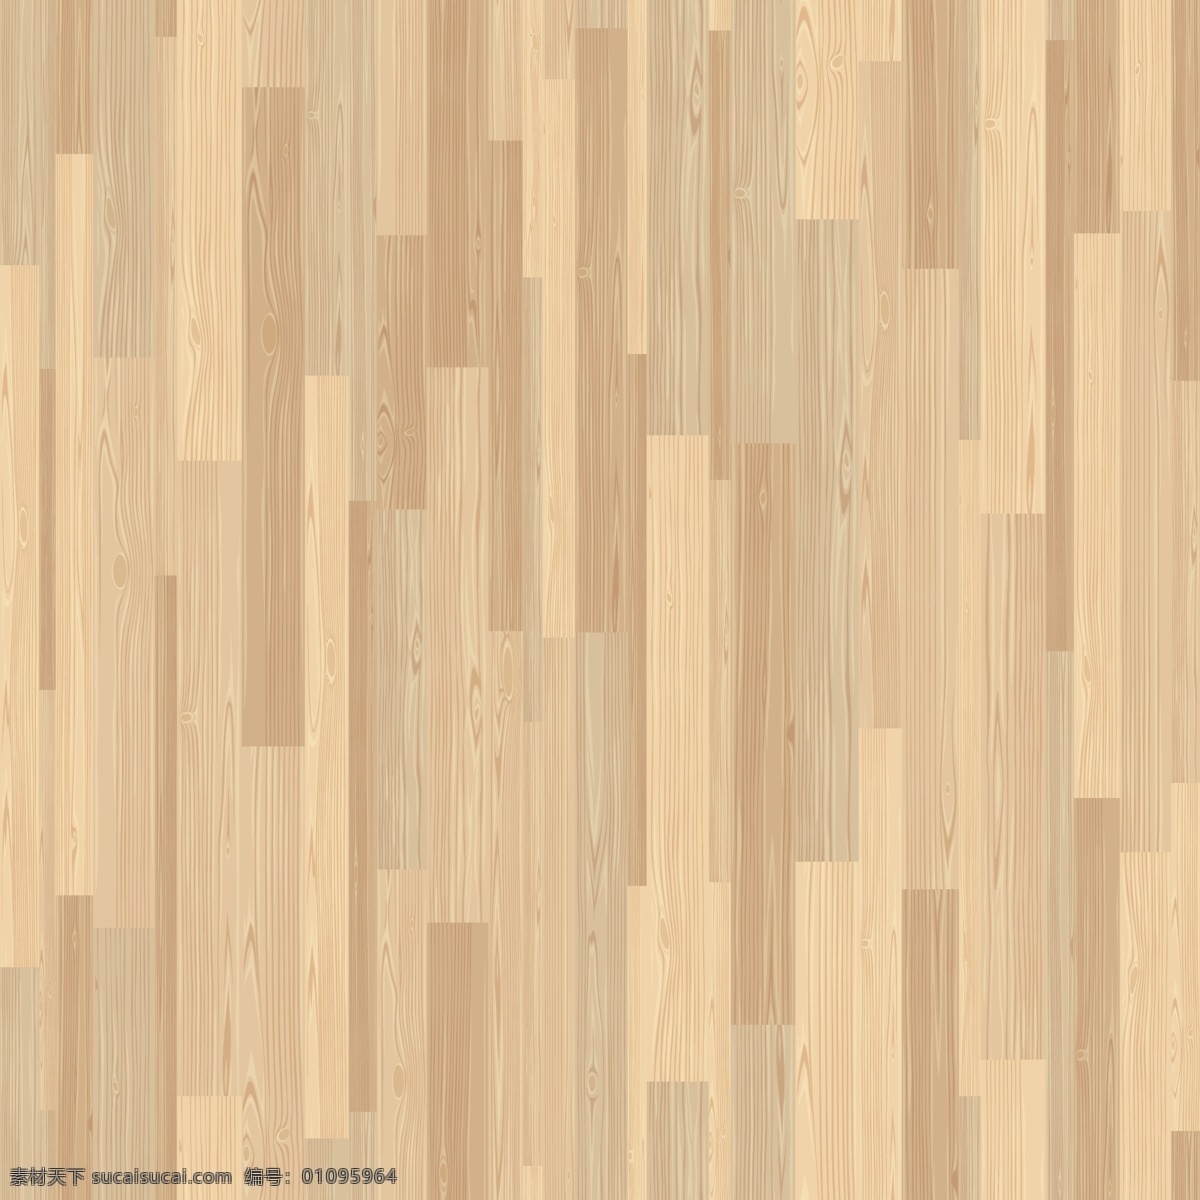 木地板 木板展台 木板 木纹 木质地板 彩色木板 木质纹理 木板条 手绘木板 逼真木板 背景底纹